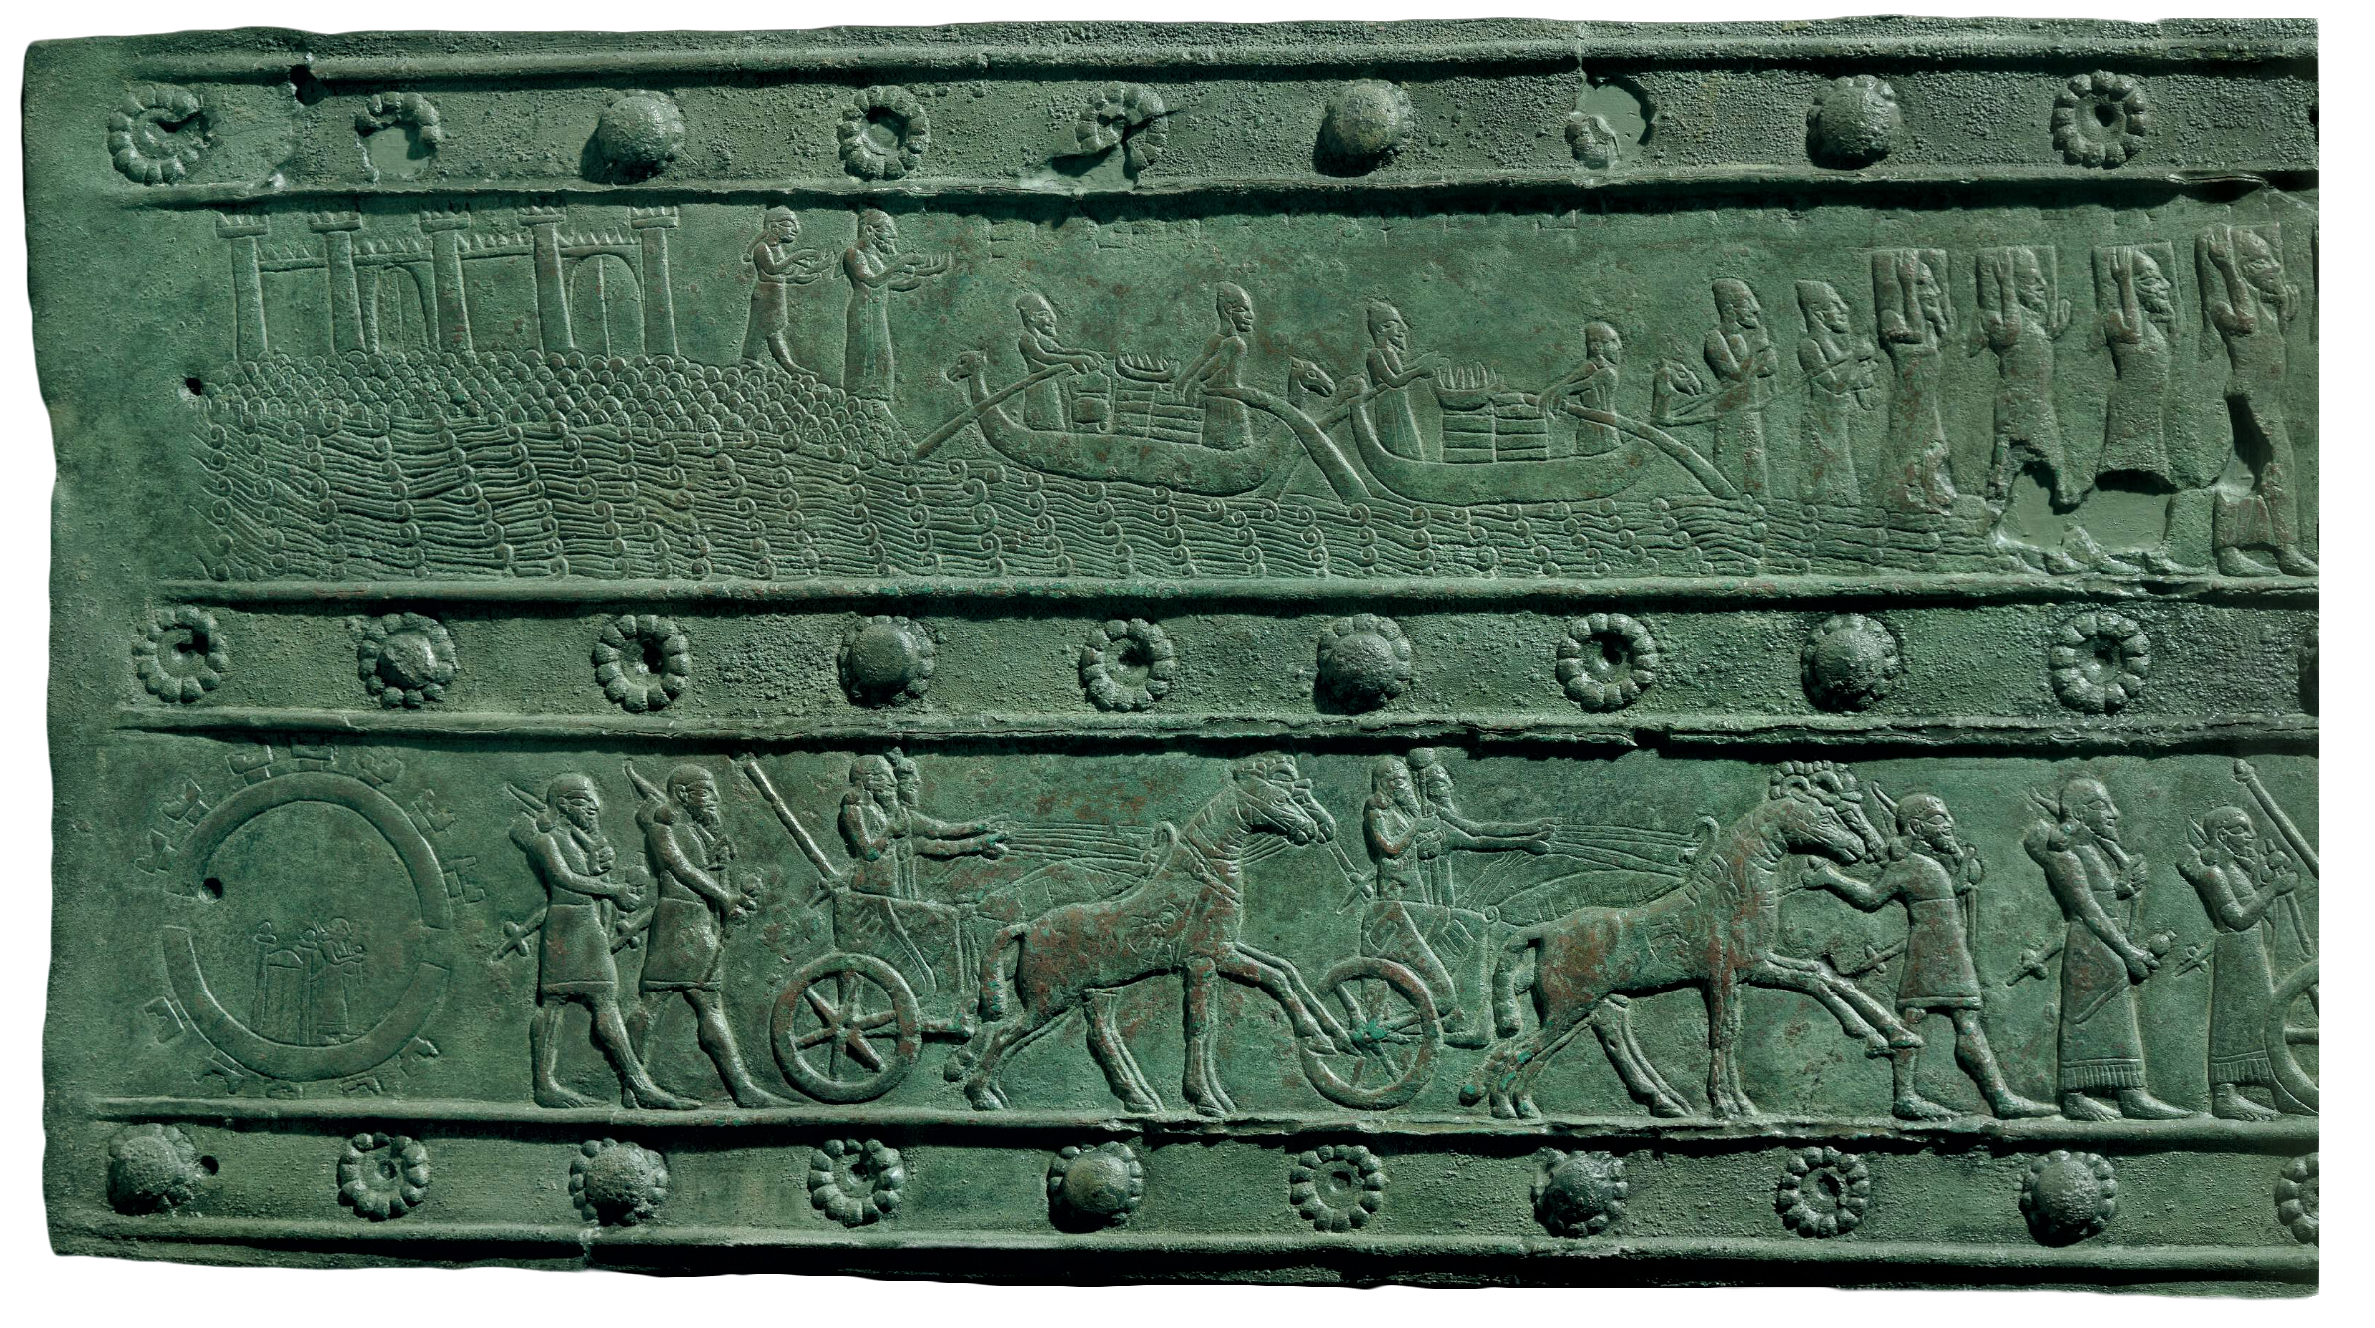 band R3 (British Museum 124661)